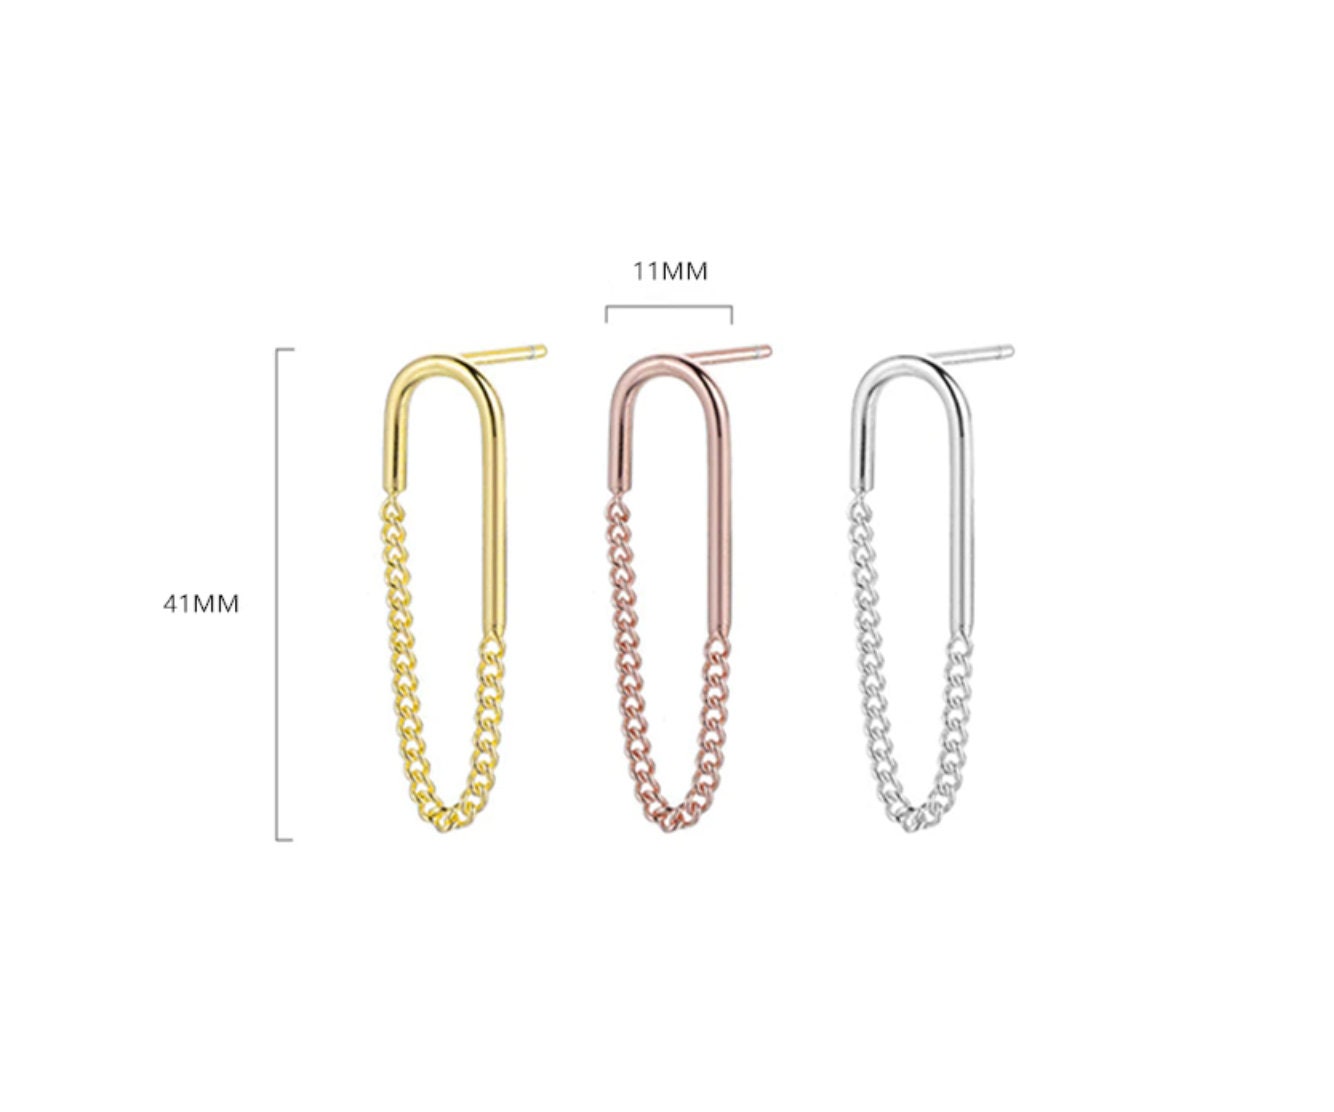 Details 76+ gold chain earrings images latest - 3tdesign.edu.vn